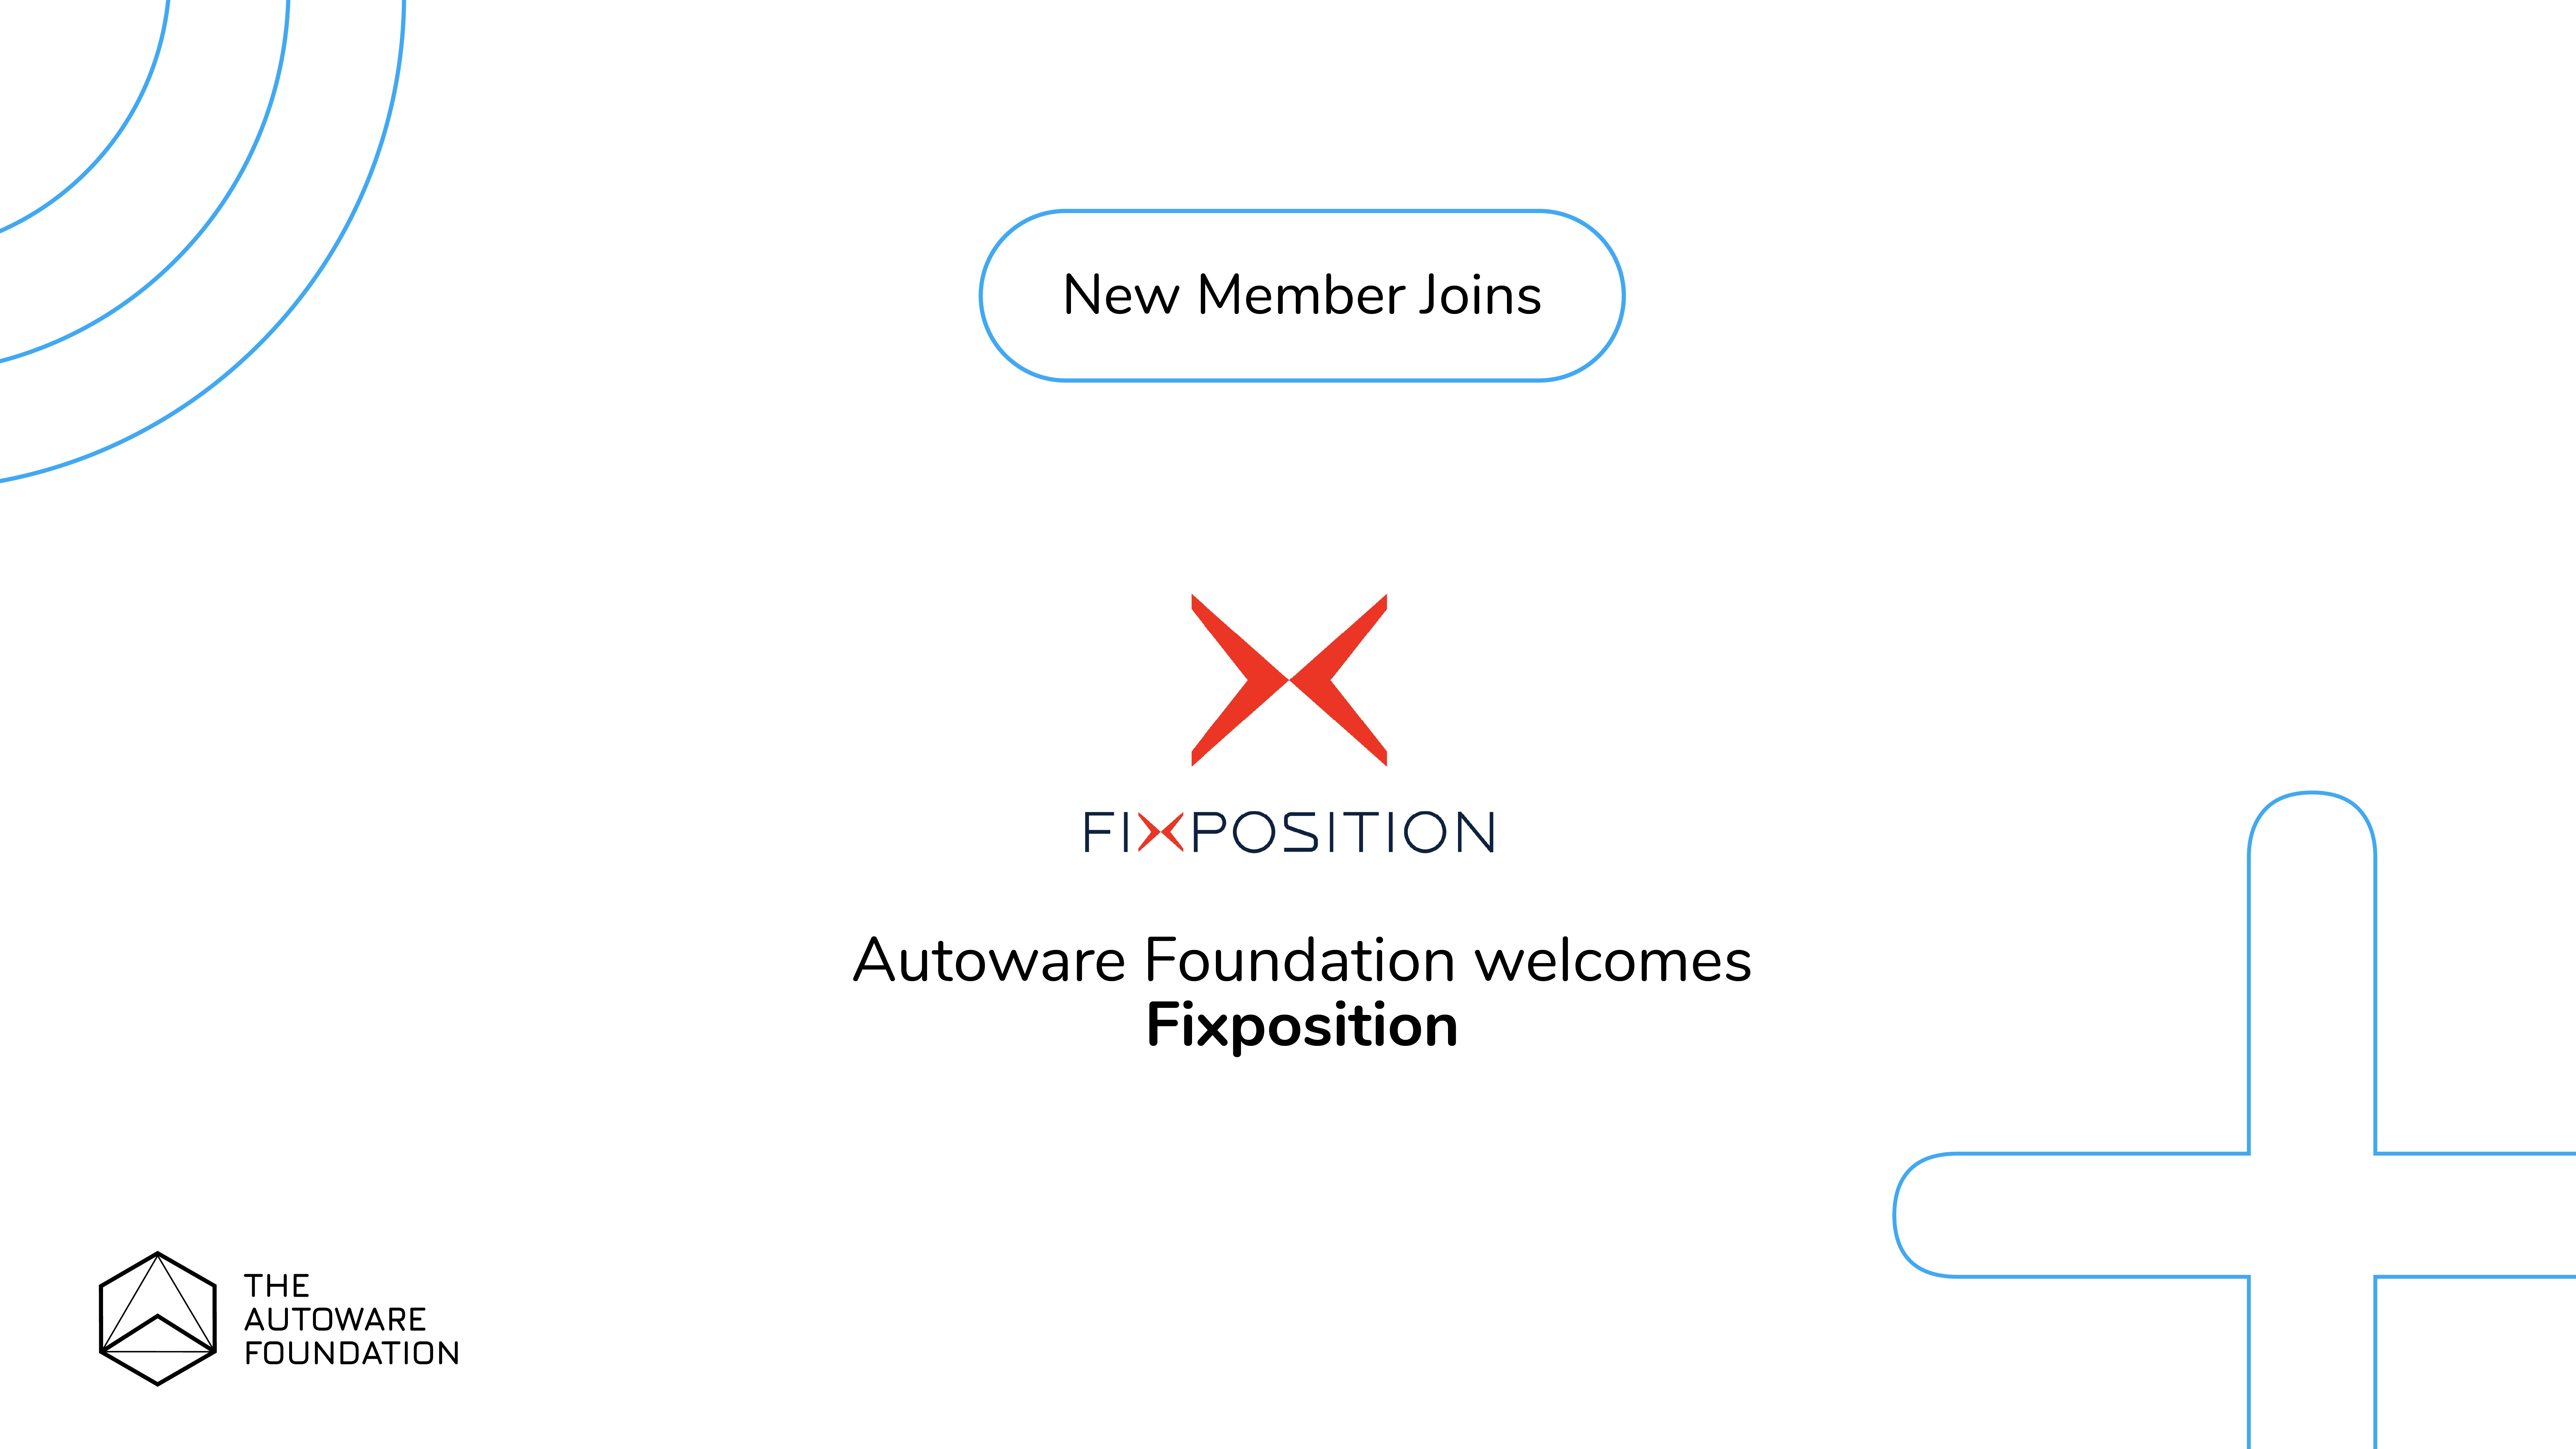 Fixposition joins the Autoware Foundation